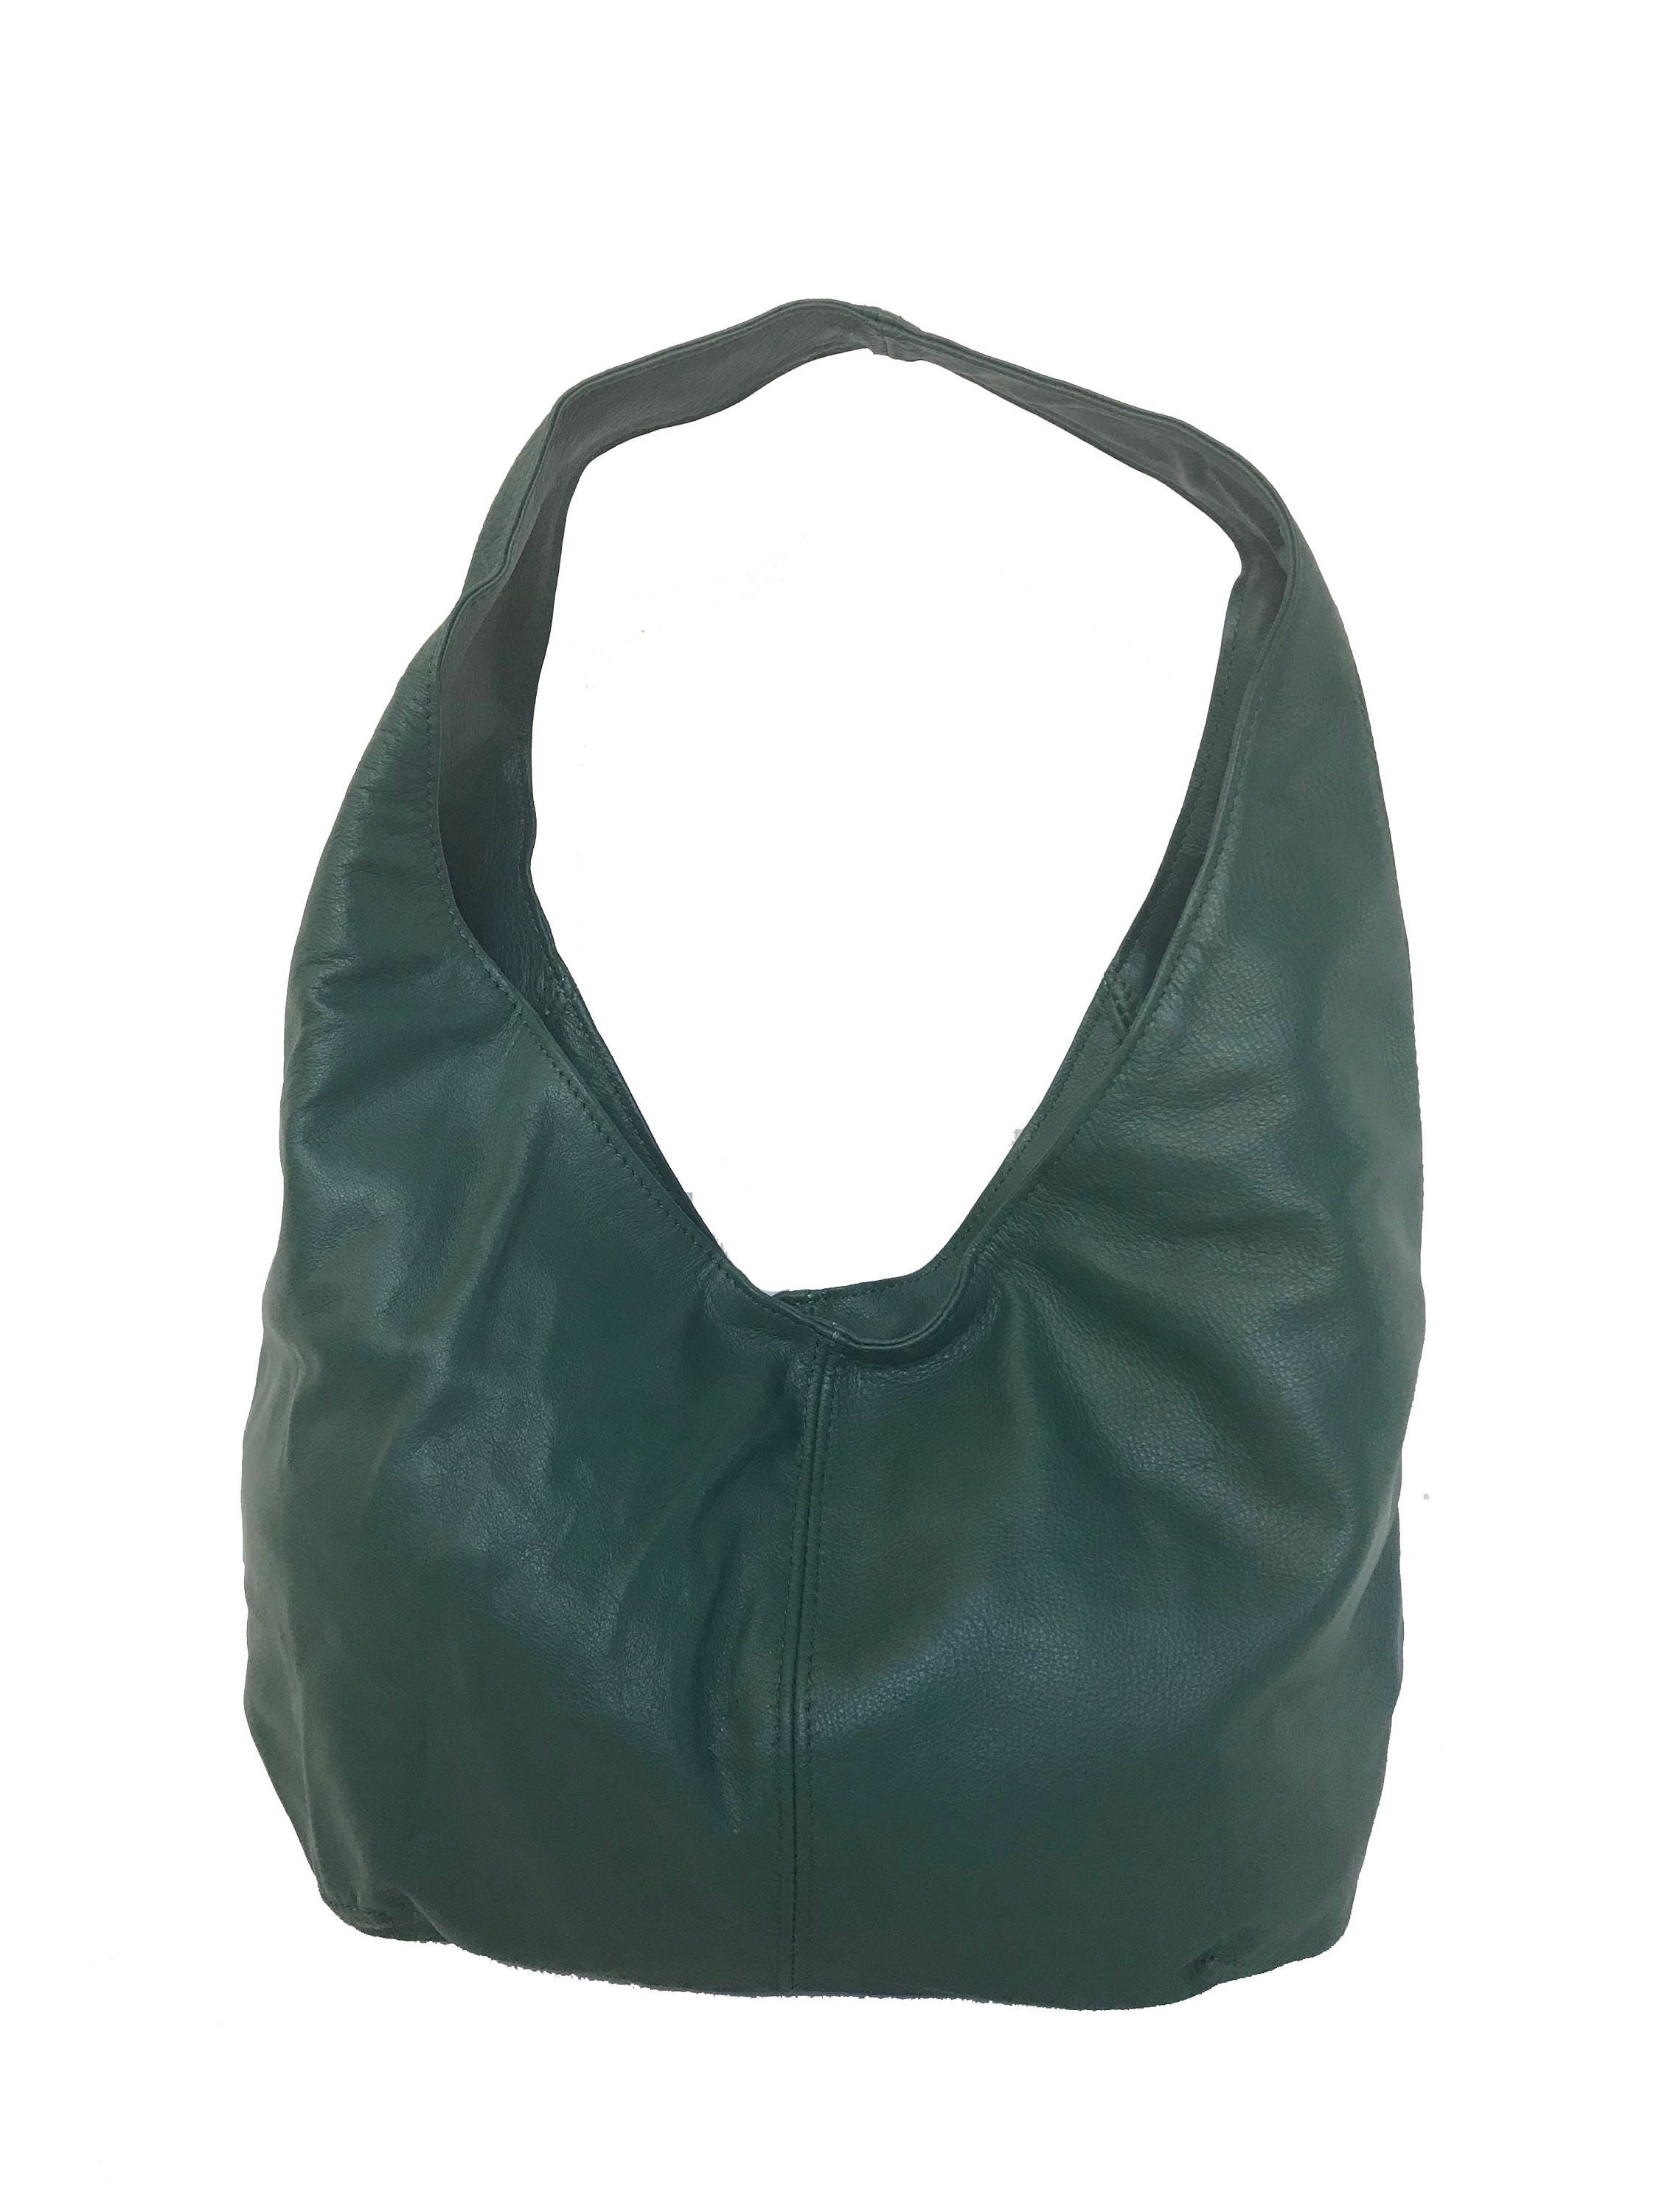 Green Leather Purse Hobo Bag Women Handbags Handmade Purses | Etsy